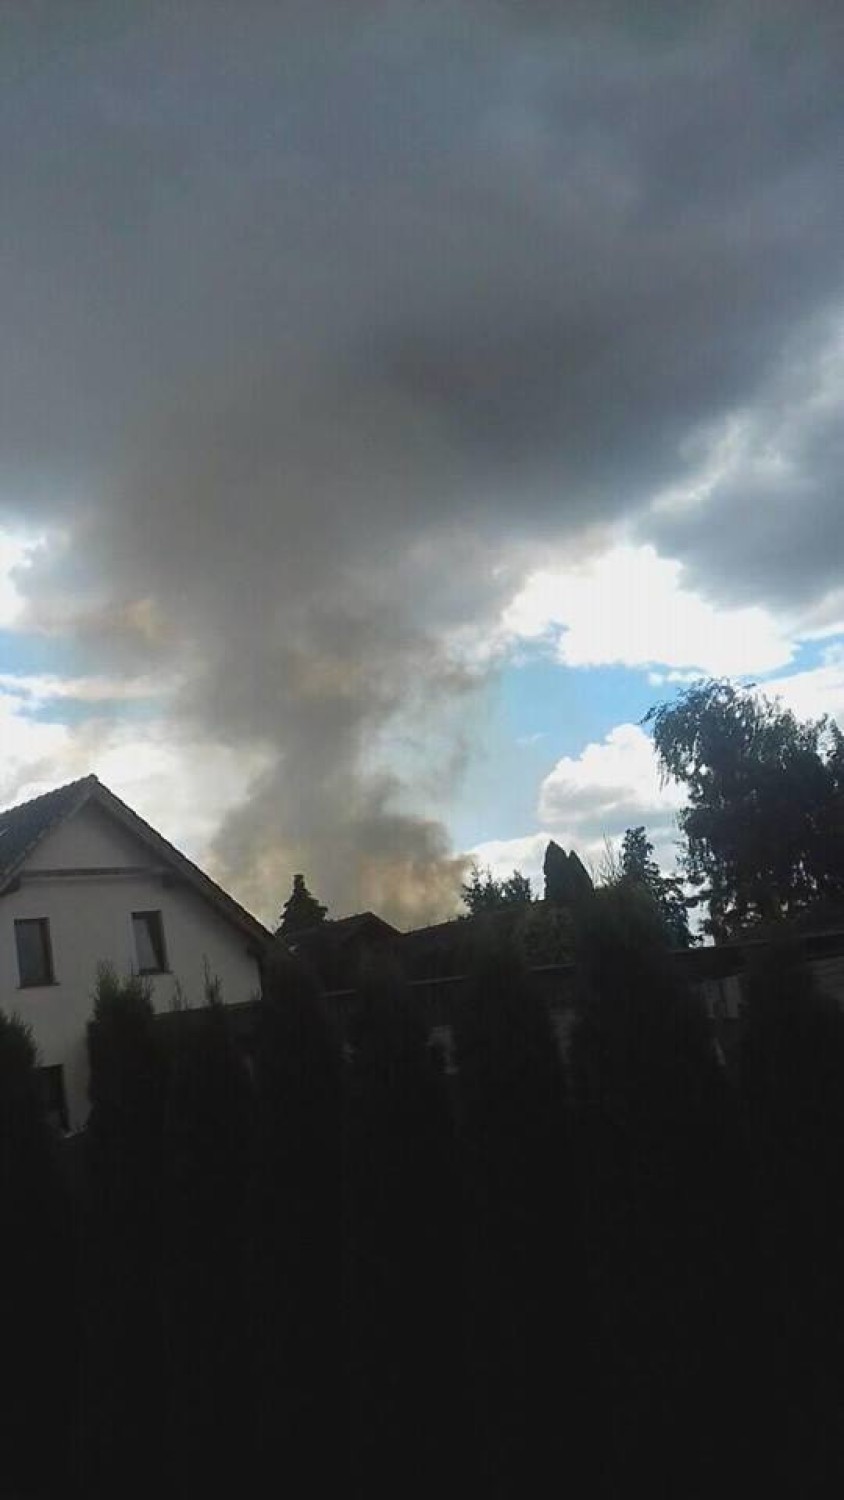 Poniedziałkowy pożar widać było nawet w Łowyniu!